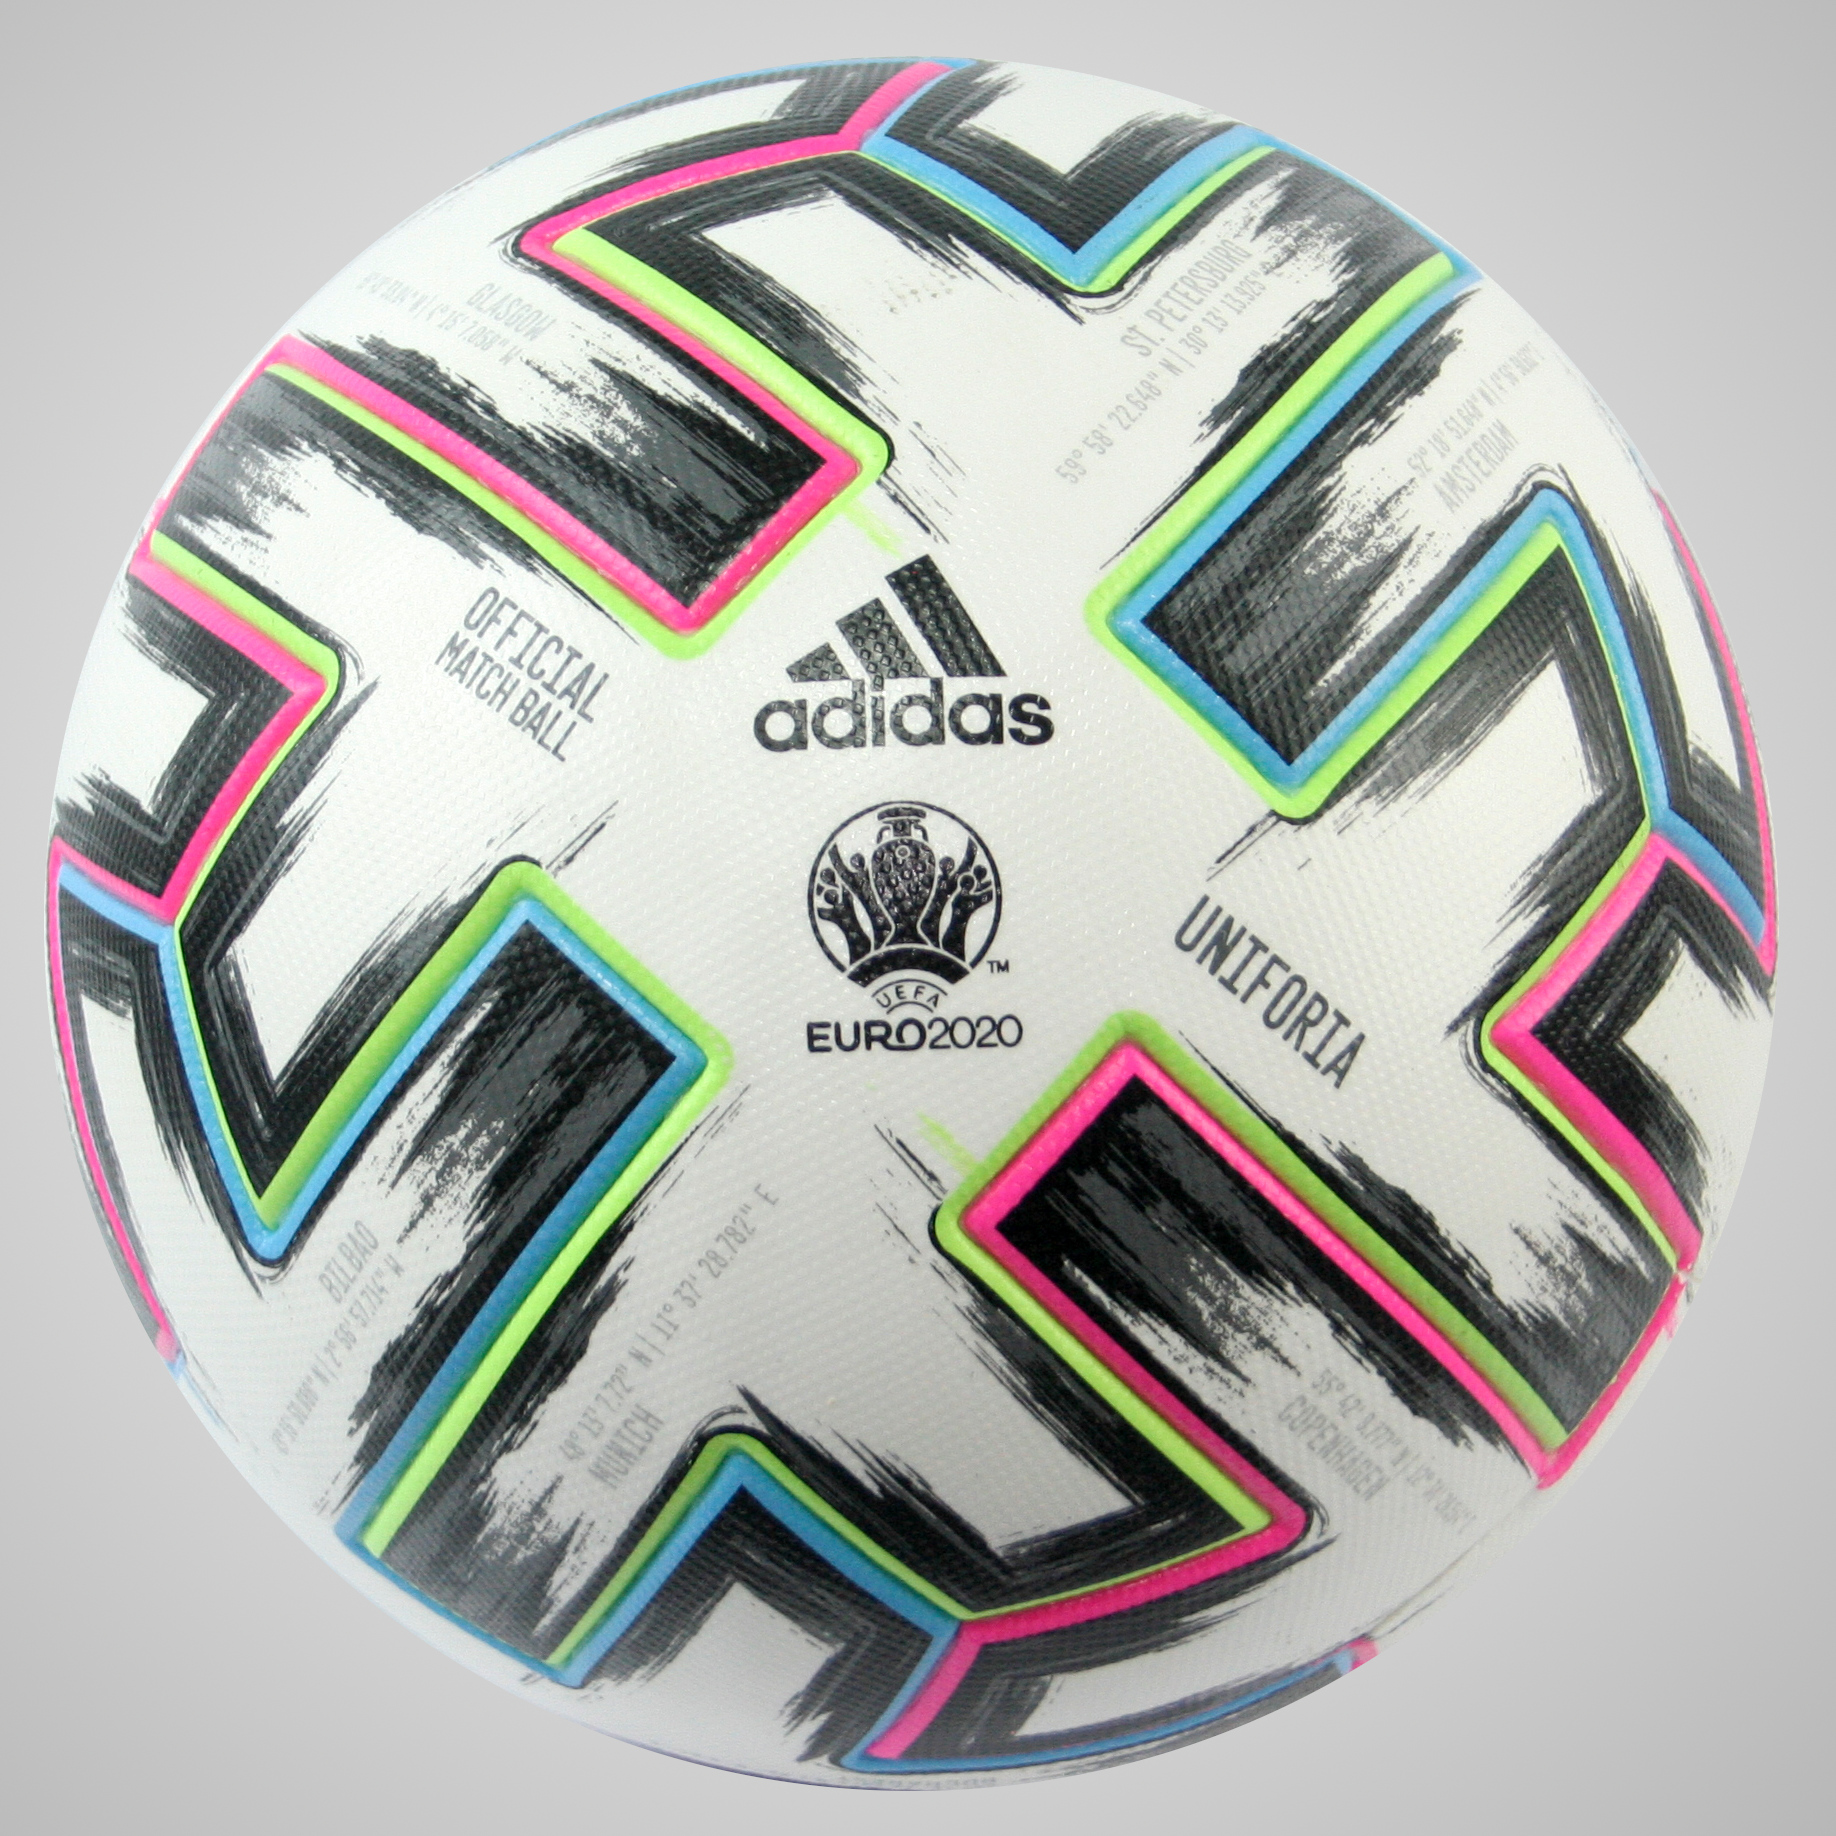 Adidas Uniforia 2020 Official Matchball EM 2020